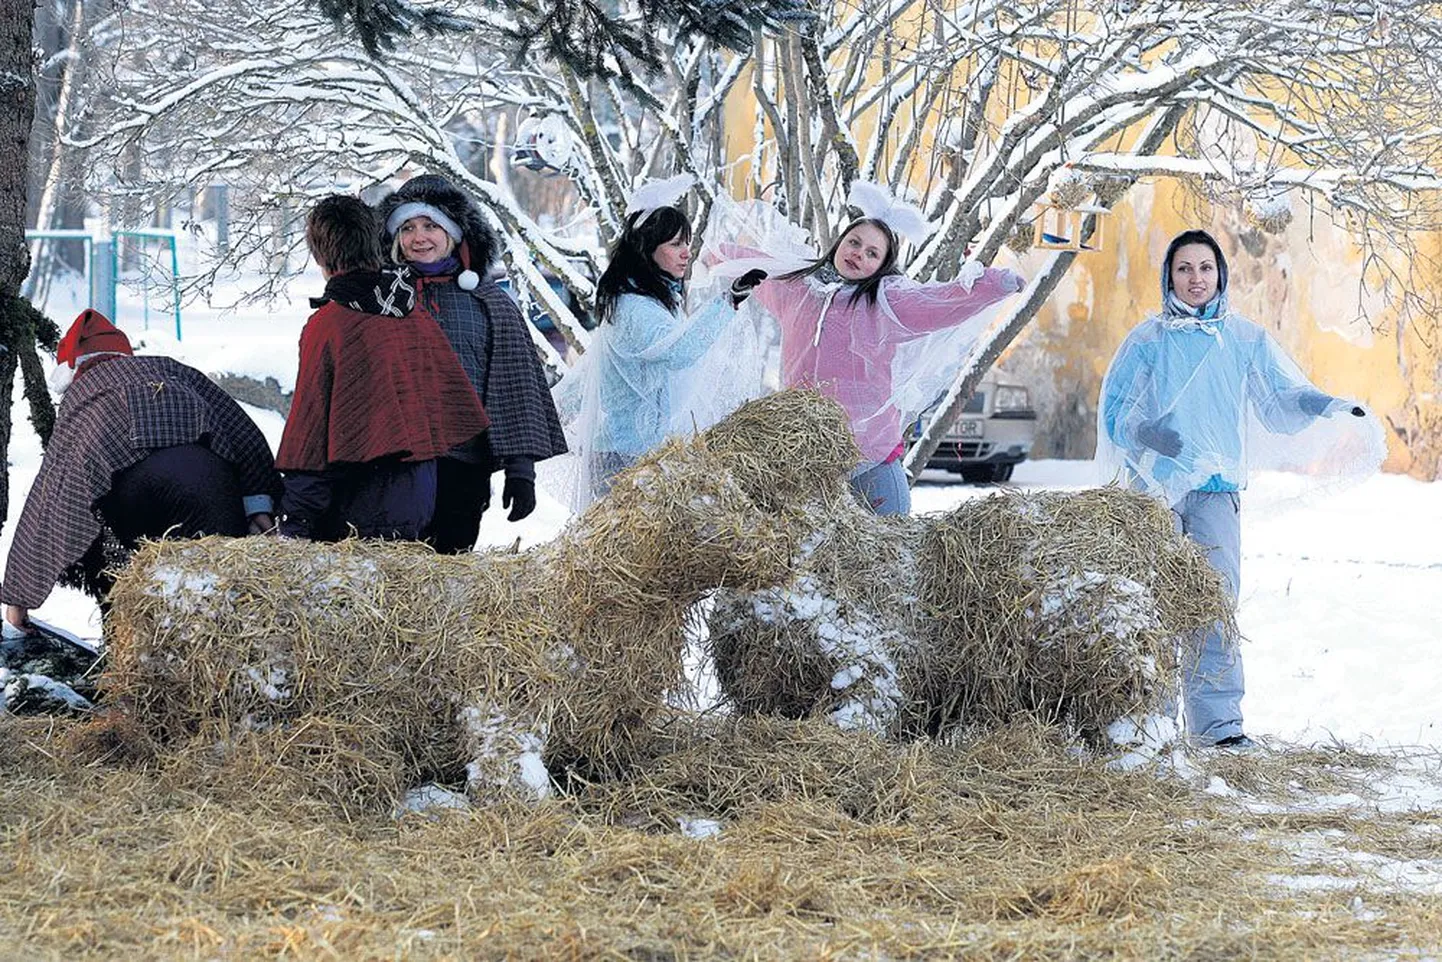 Kaagvere erikooli jõulupeol eile oli kõik, nagu olema peab: õpilased olid õue suure kuuse alla meisterdanud põhuloomad, mille vahel etendus jõululugu. Sellele pildile jäid jõululoos karjaseid ja ingleid kehastanud tüdrukud.